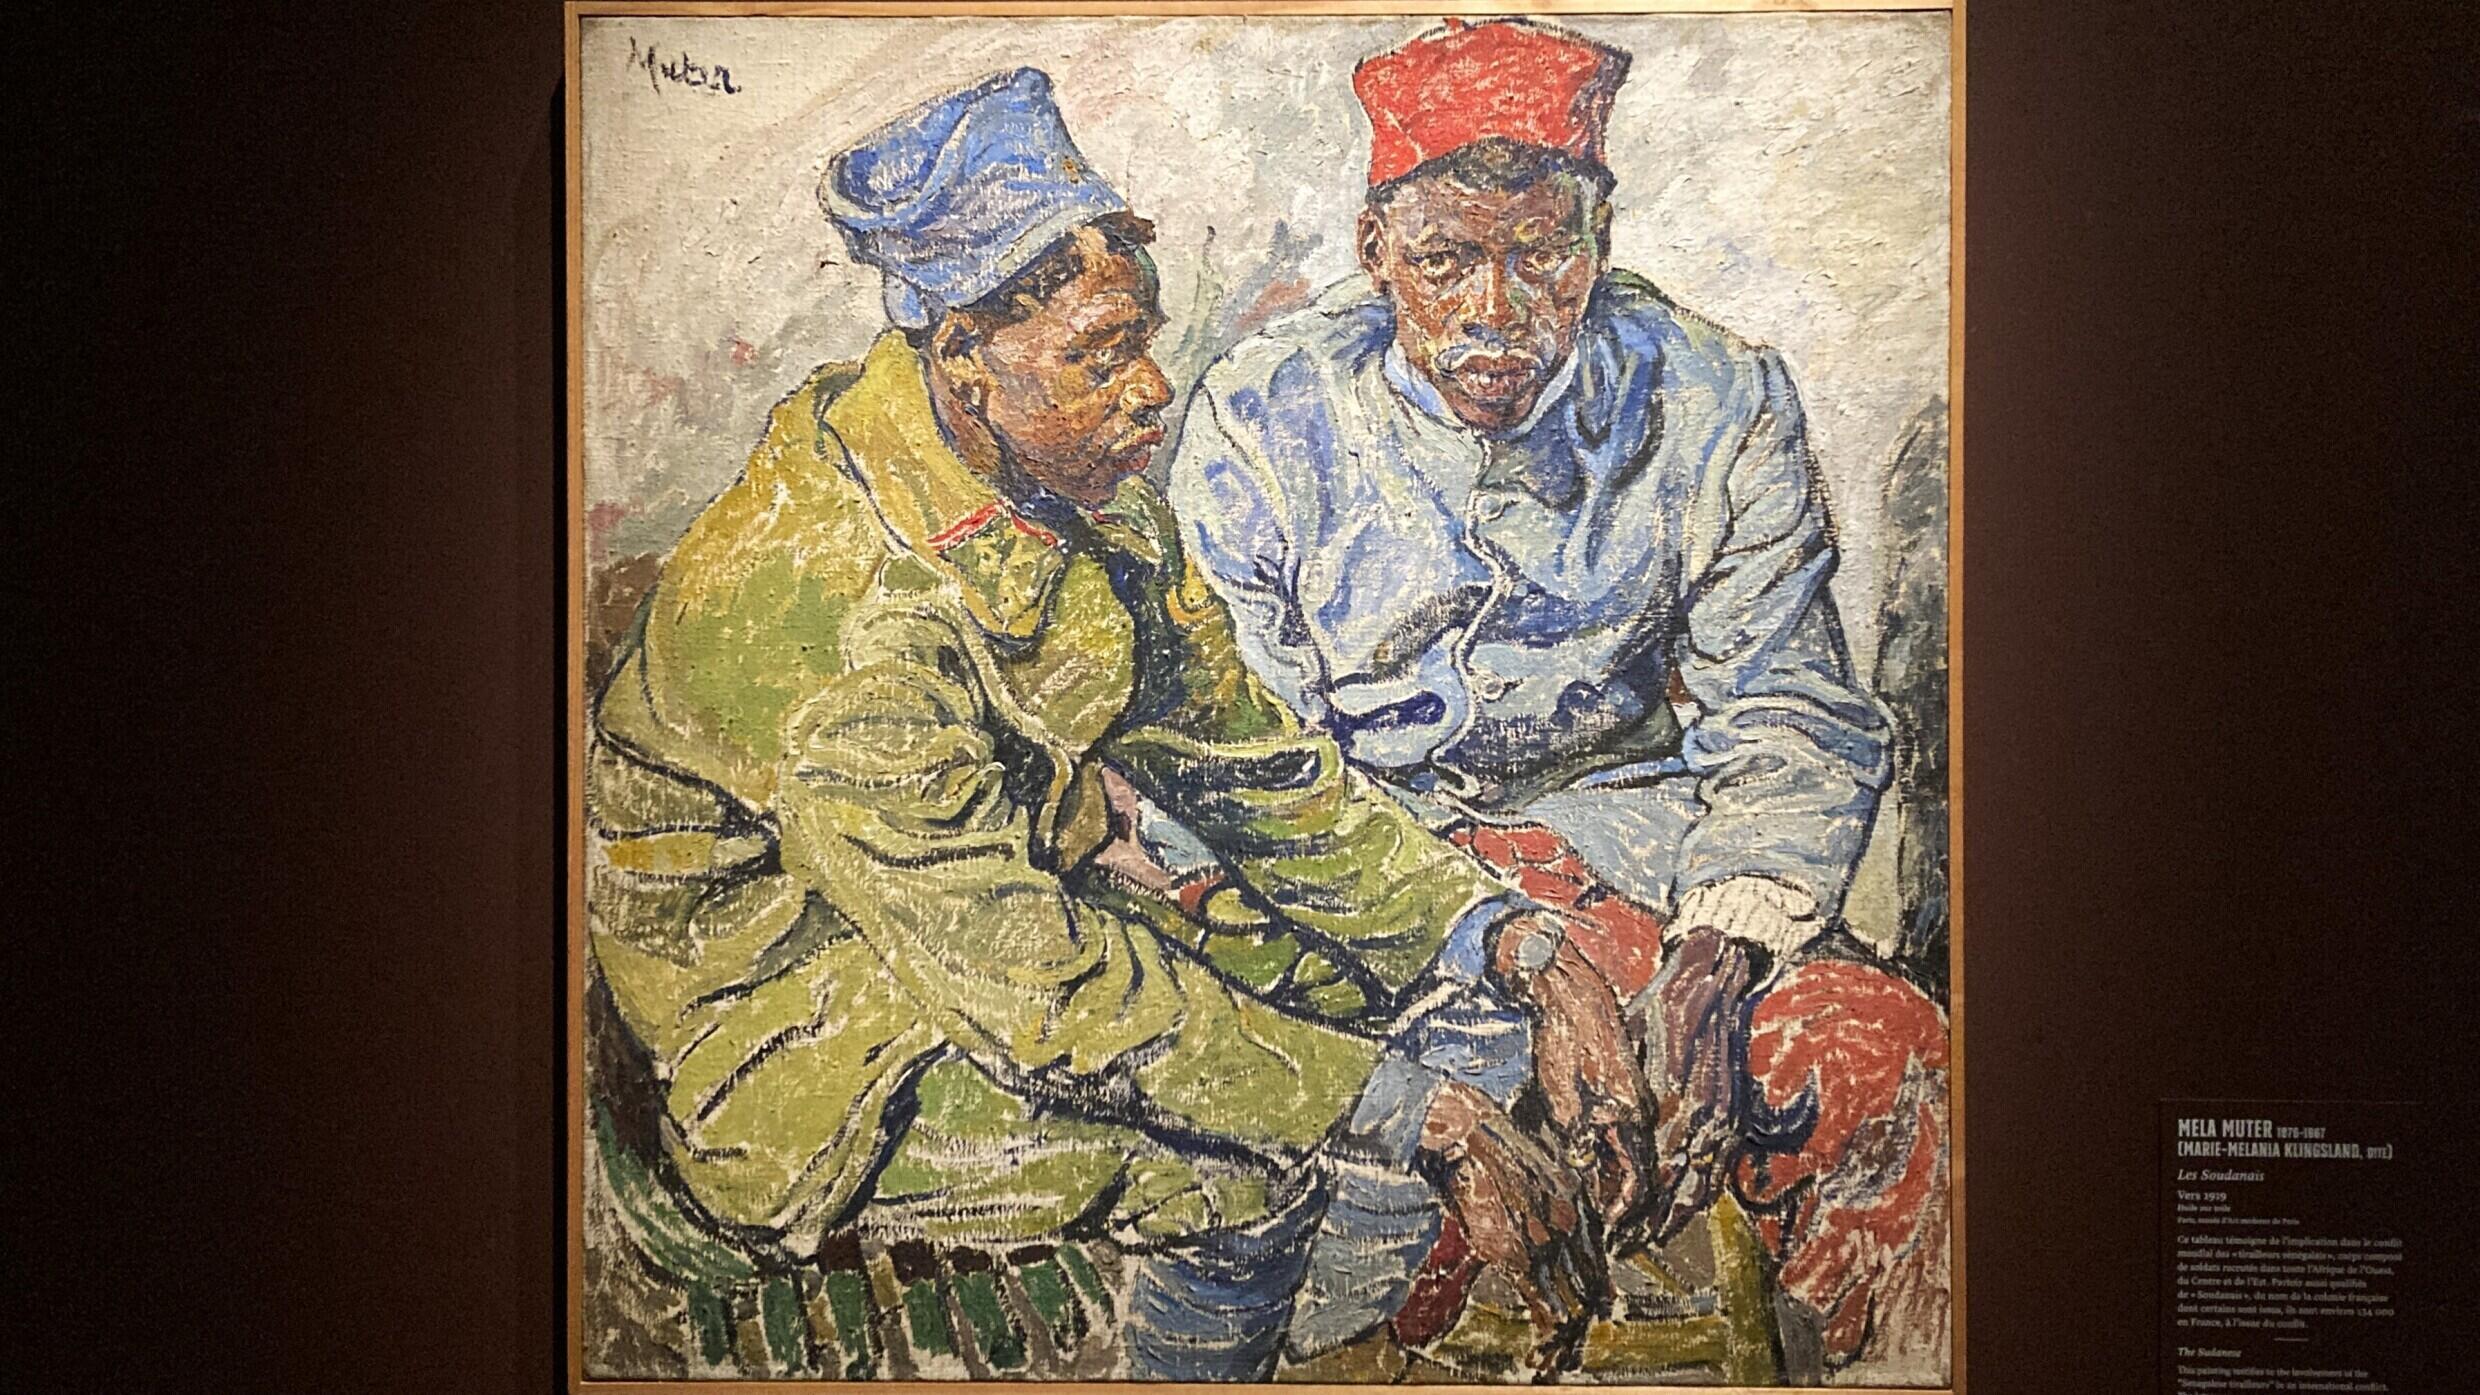 Vue sur « Les Soudanais » (1919) de Mela Muter, tableau exposé dans « Le Paris de la modernité ».